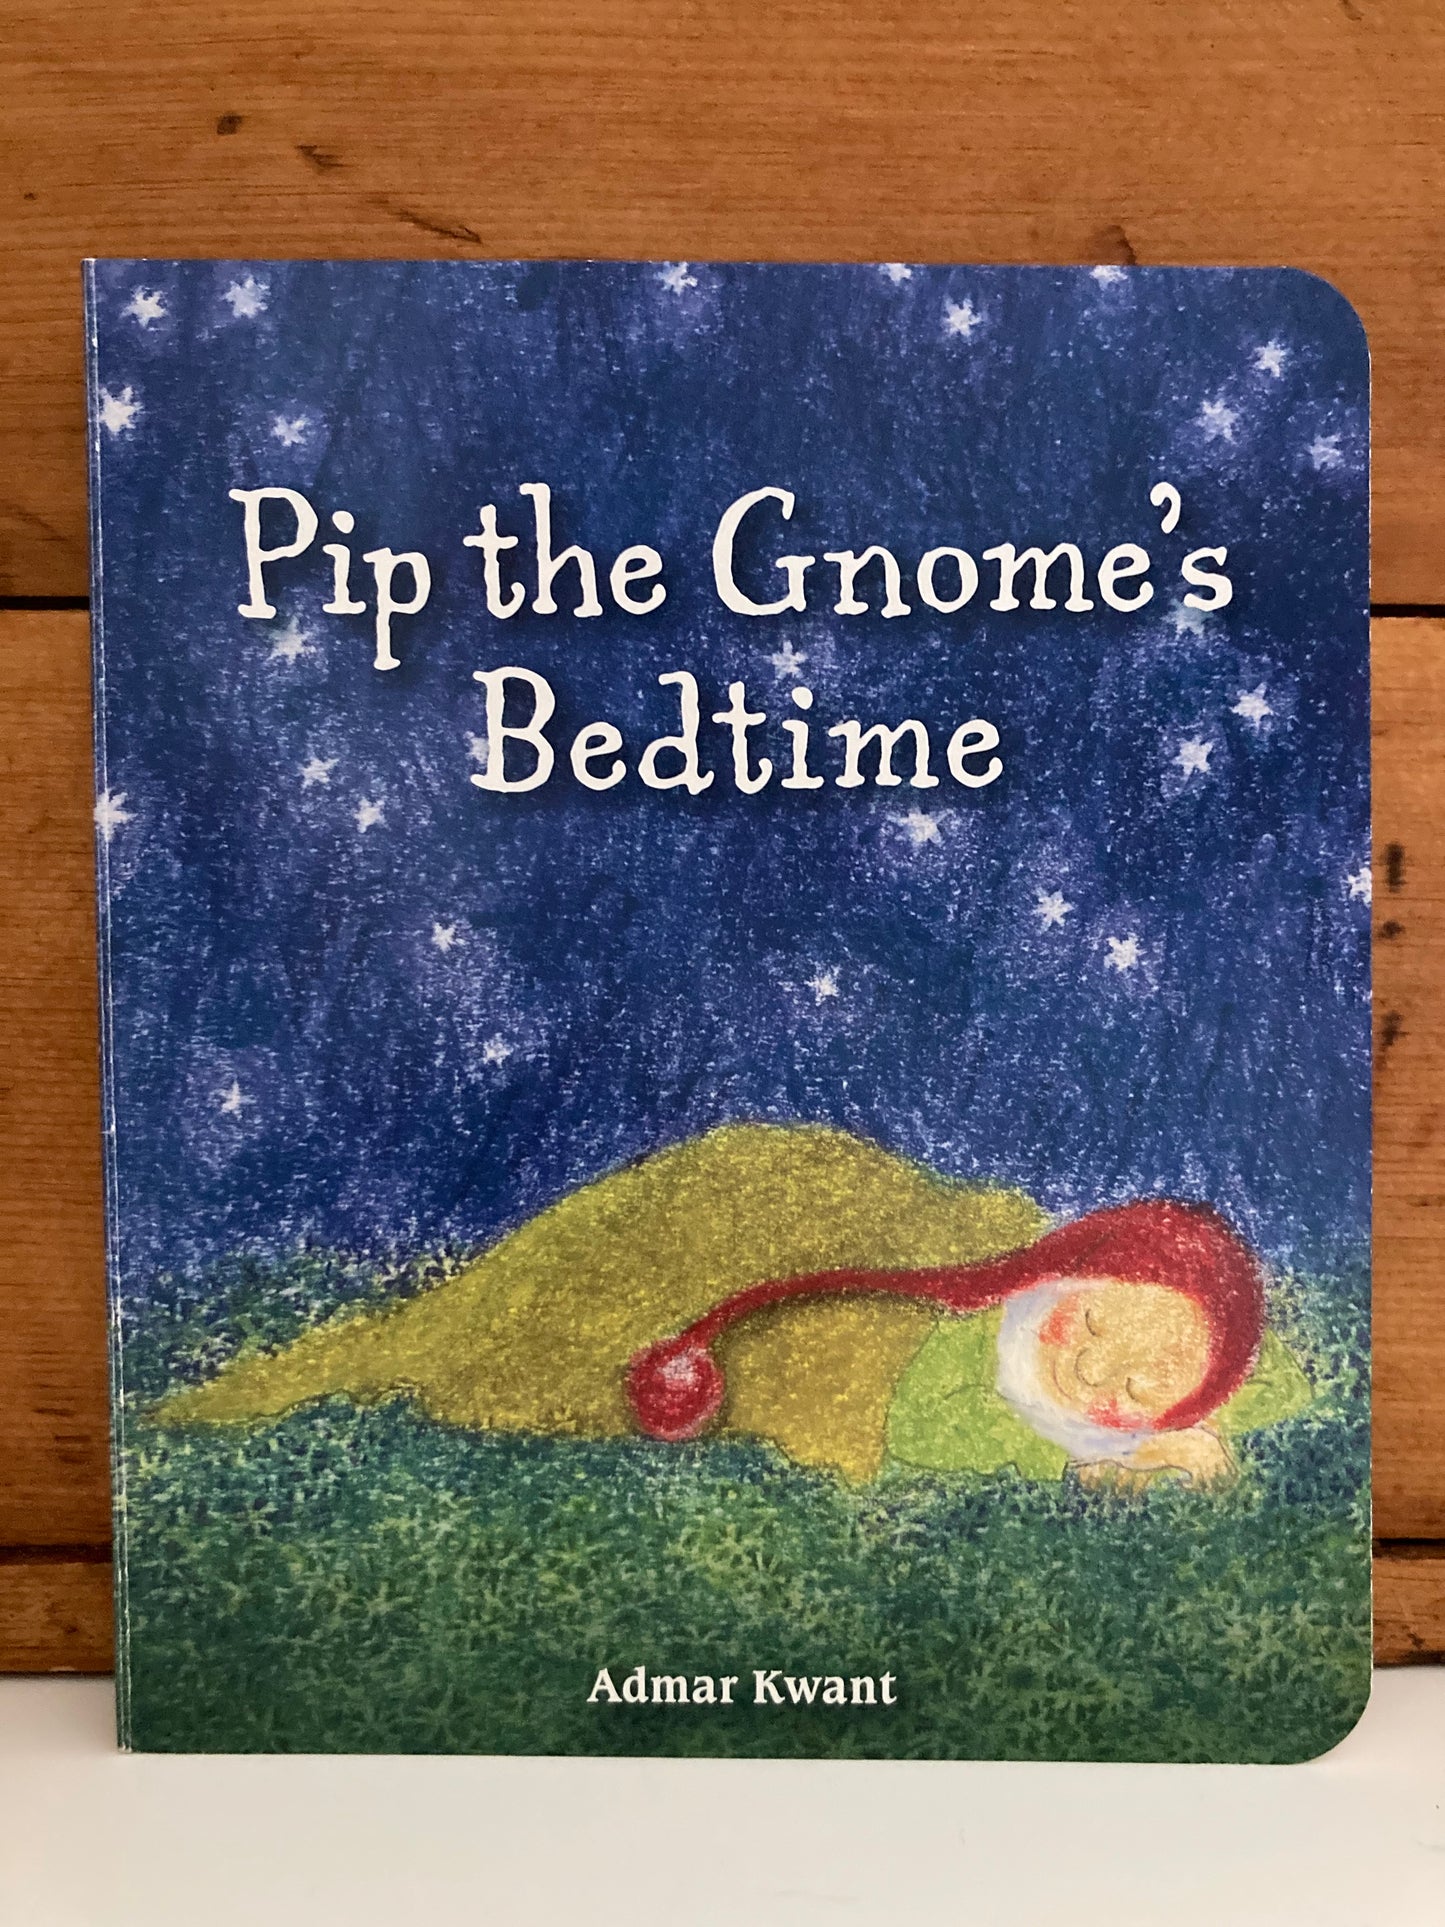 Board Book, Baby - PIP THE GNOME BOOKS